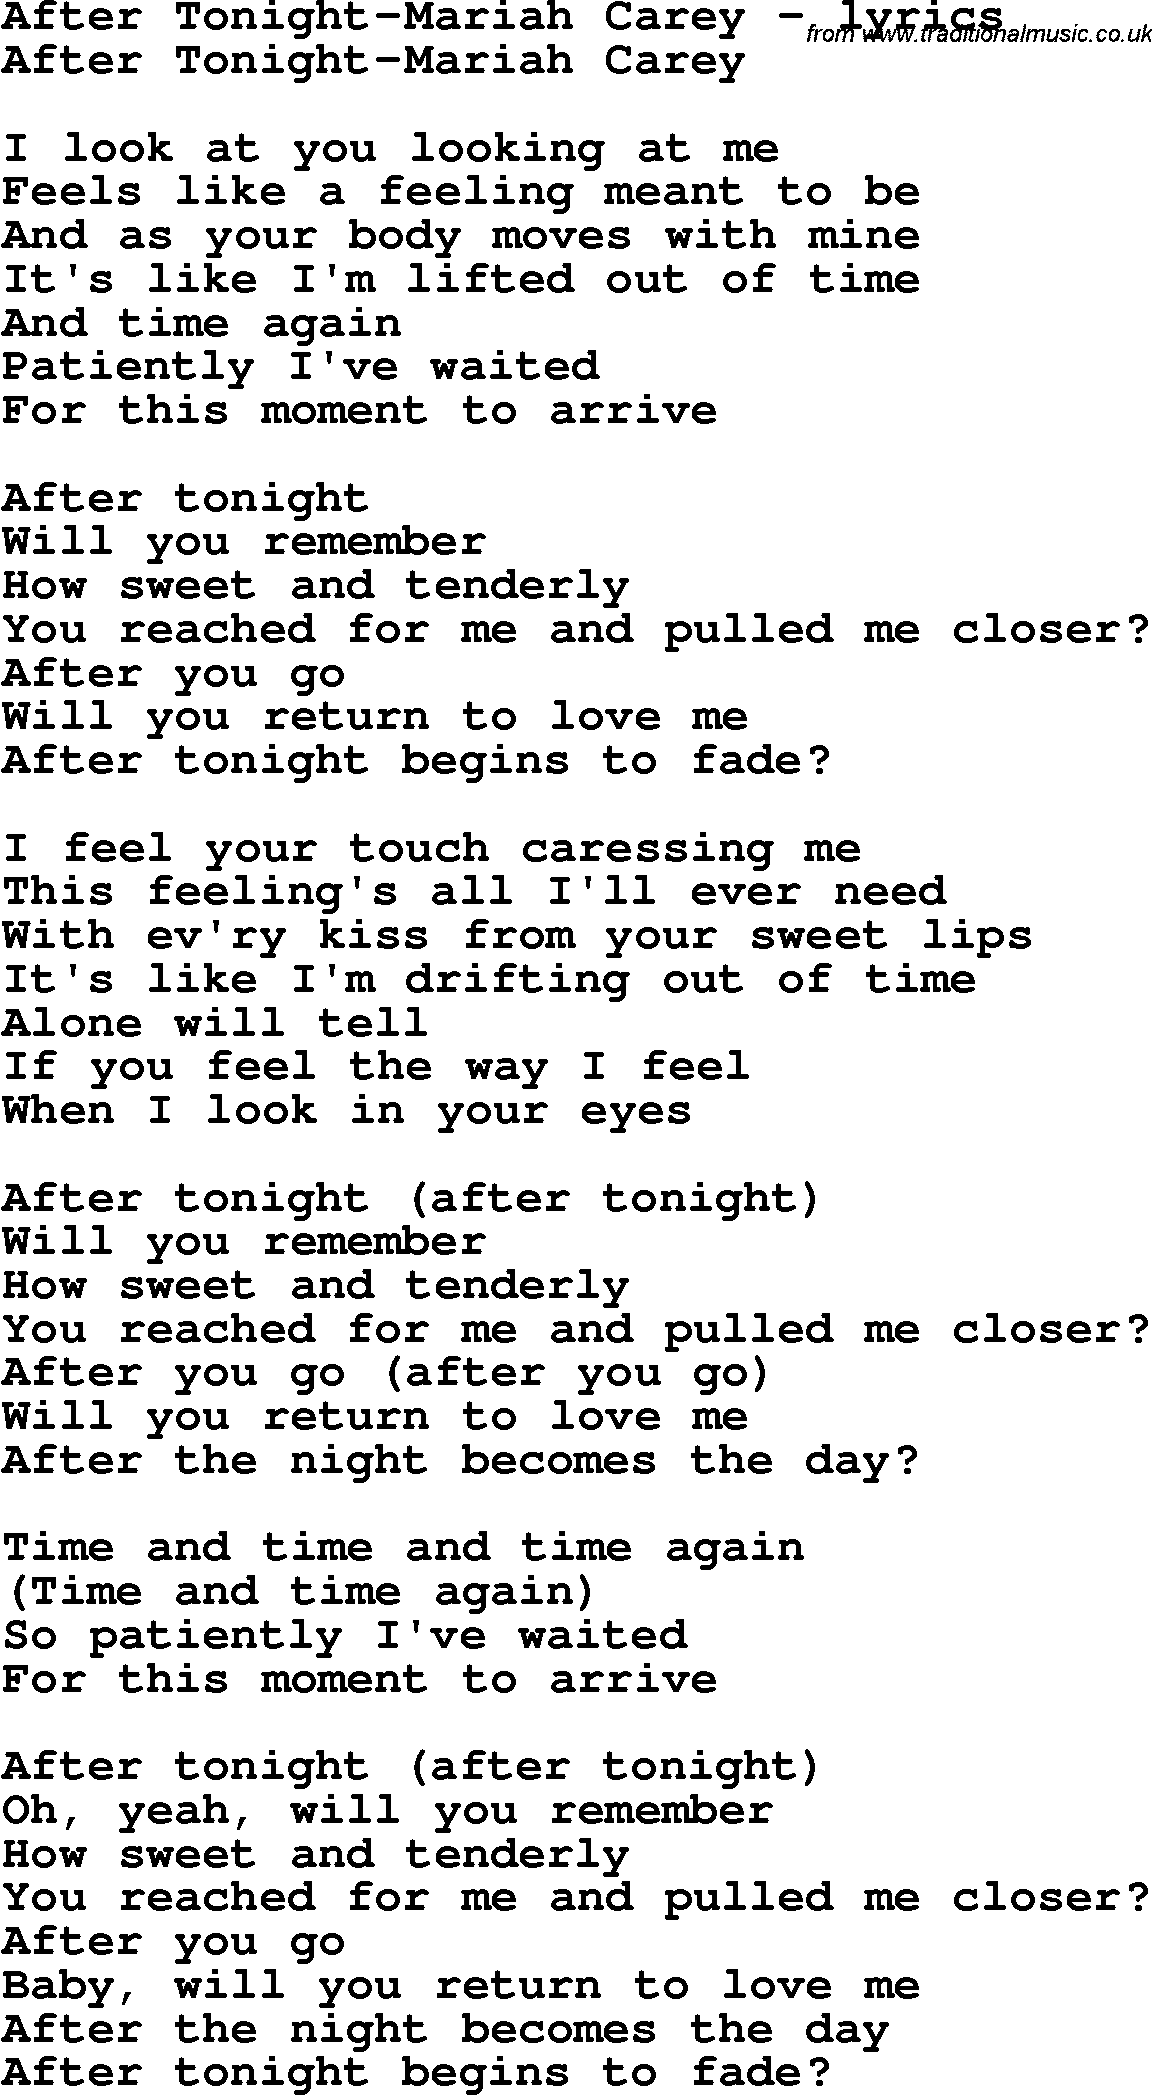 Love Song Lyrics for: After Tonight-Mariah Carey